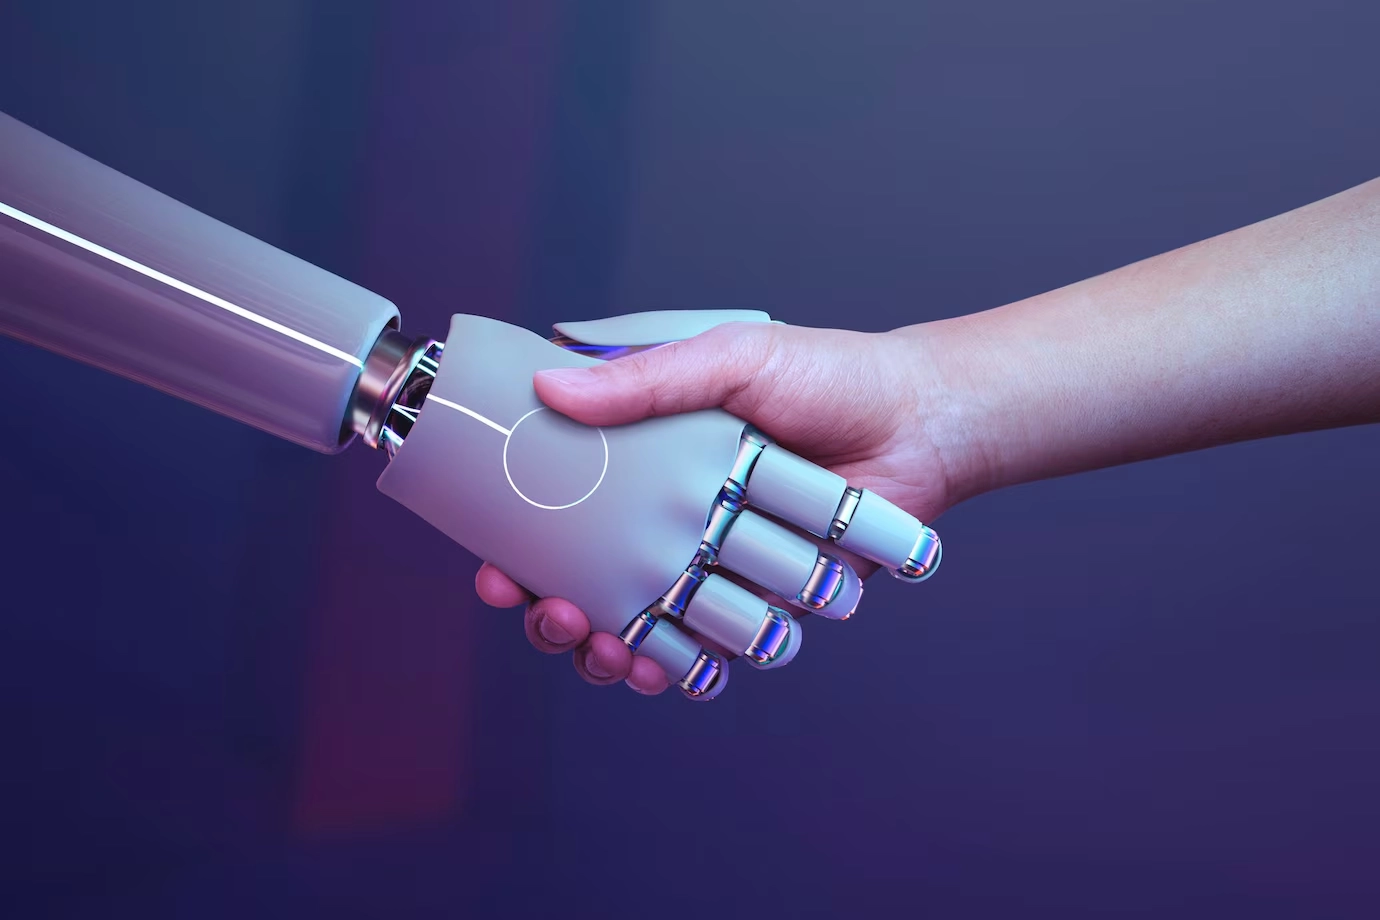 Mão robótica e humana em um aperto de mãos